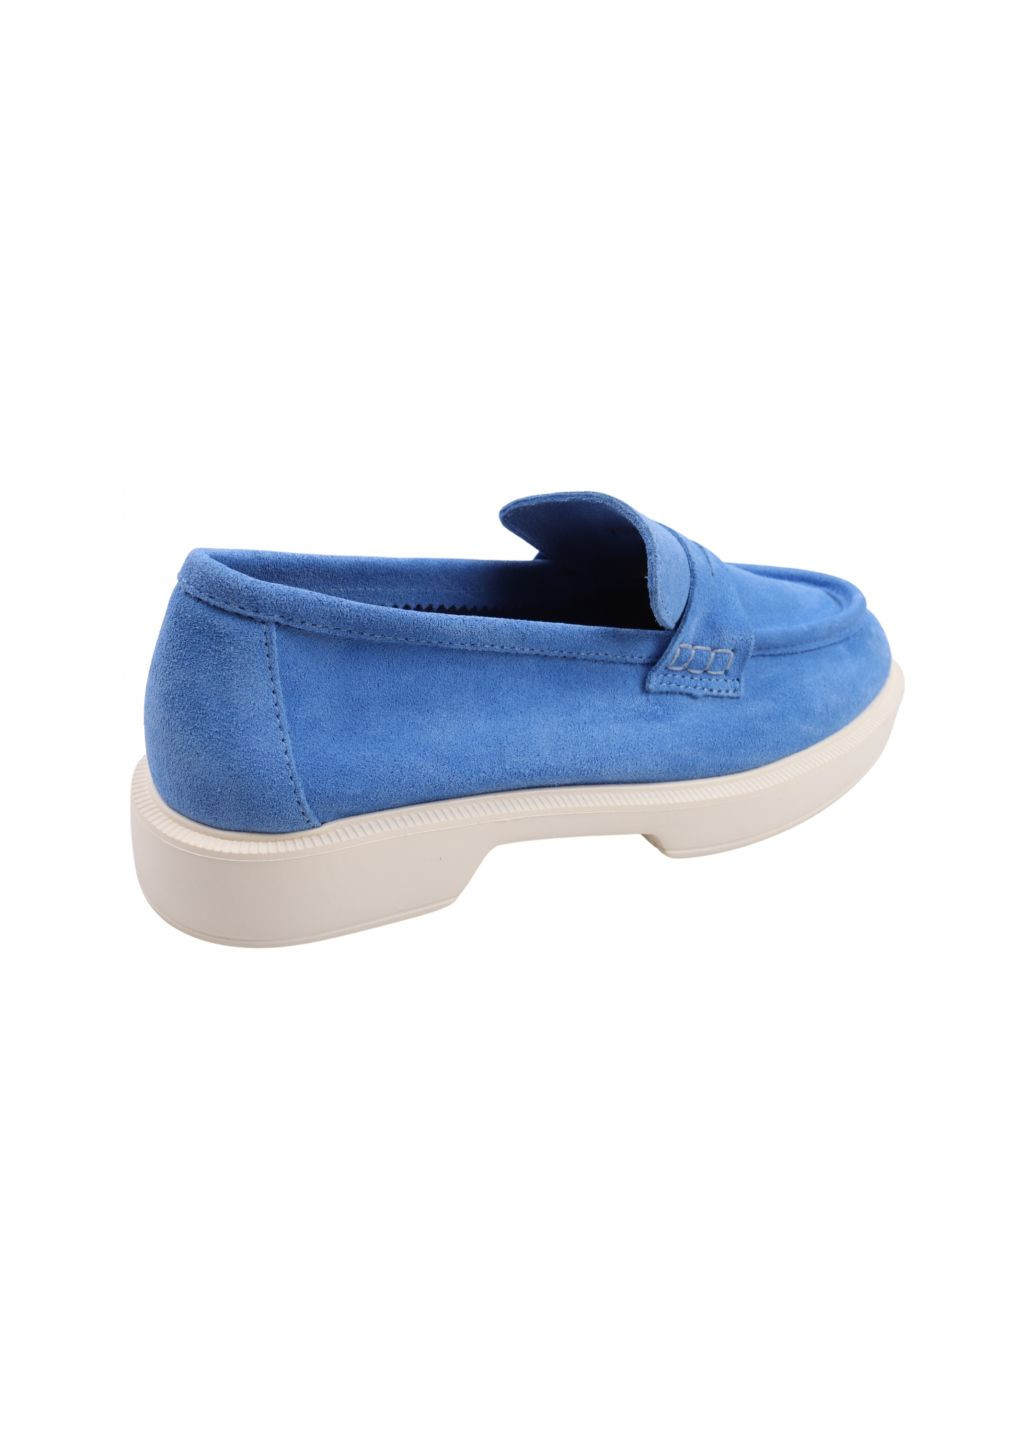 Туфлі жіночі блакитні натуральна замша Tucino 608-23dtc (257933361)